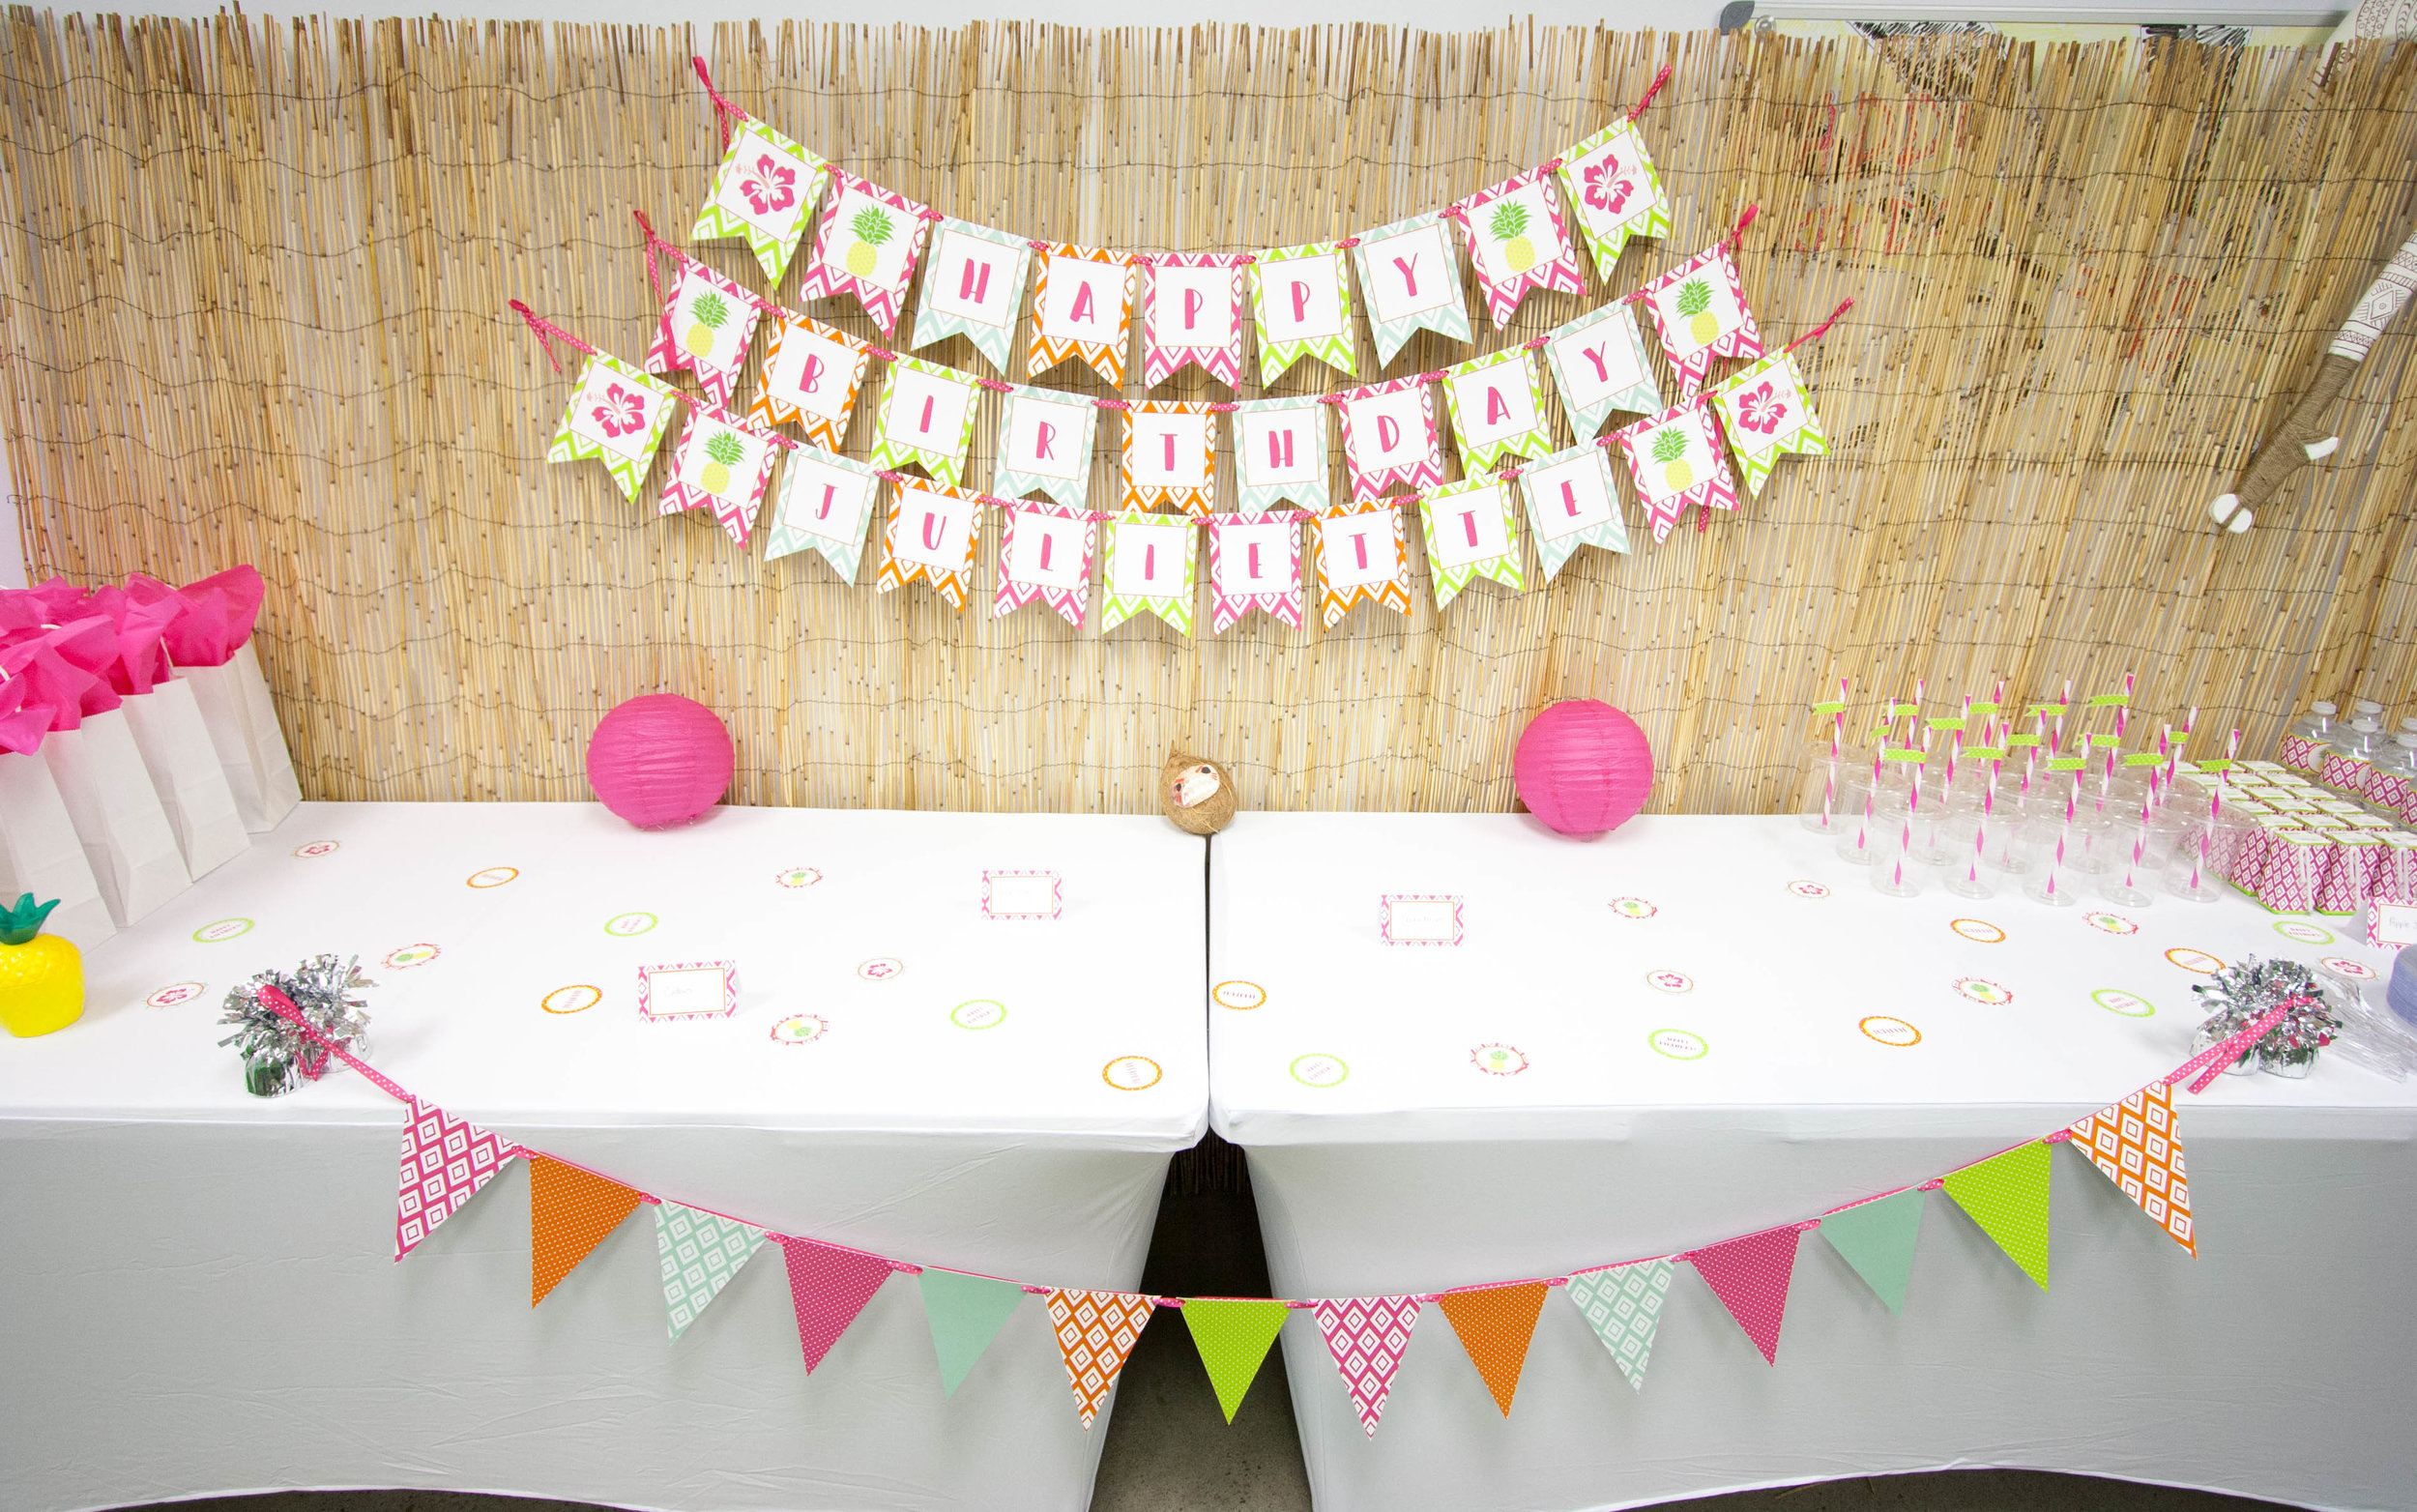 Maui (Moana/Hawaiian) Themed Birthday Party [5th Birthday] 